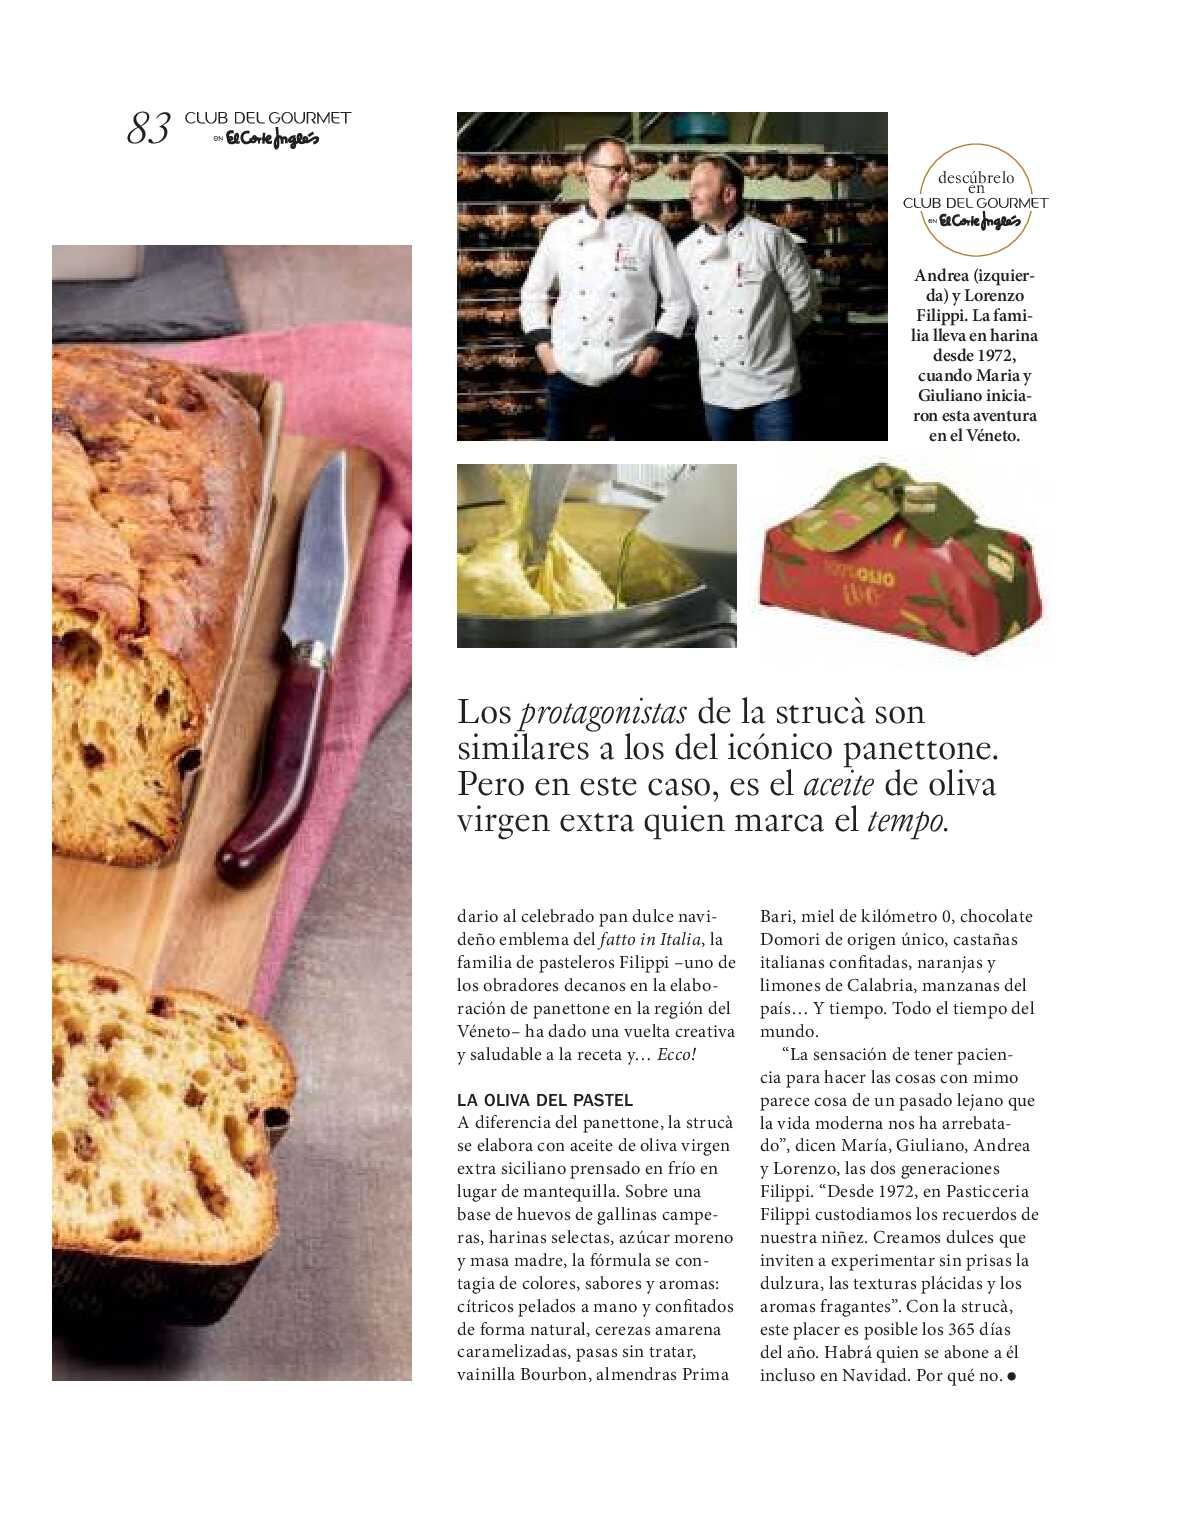 Gourmet magazine El Corte Inglés. Página 83